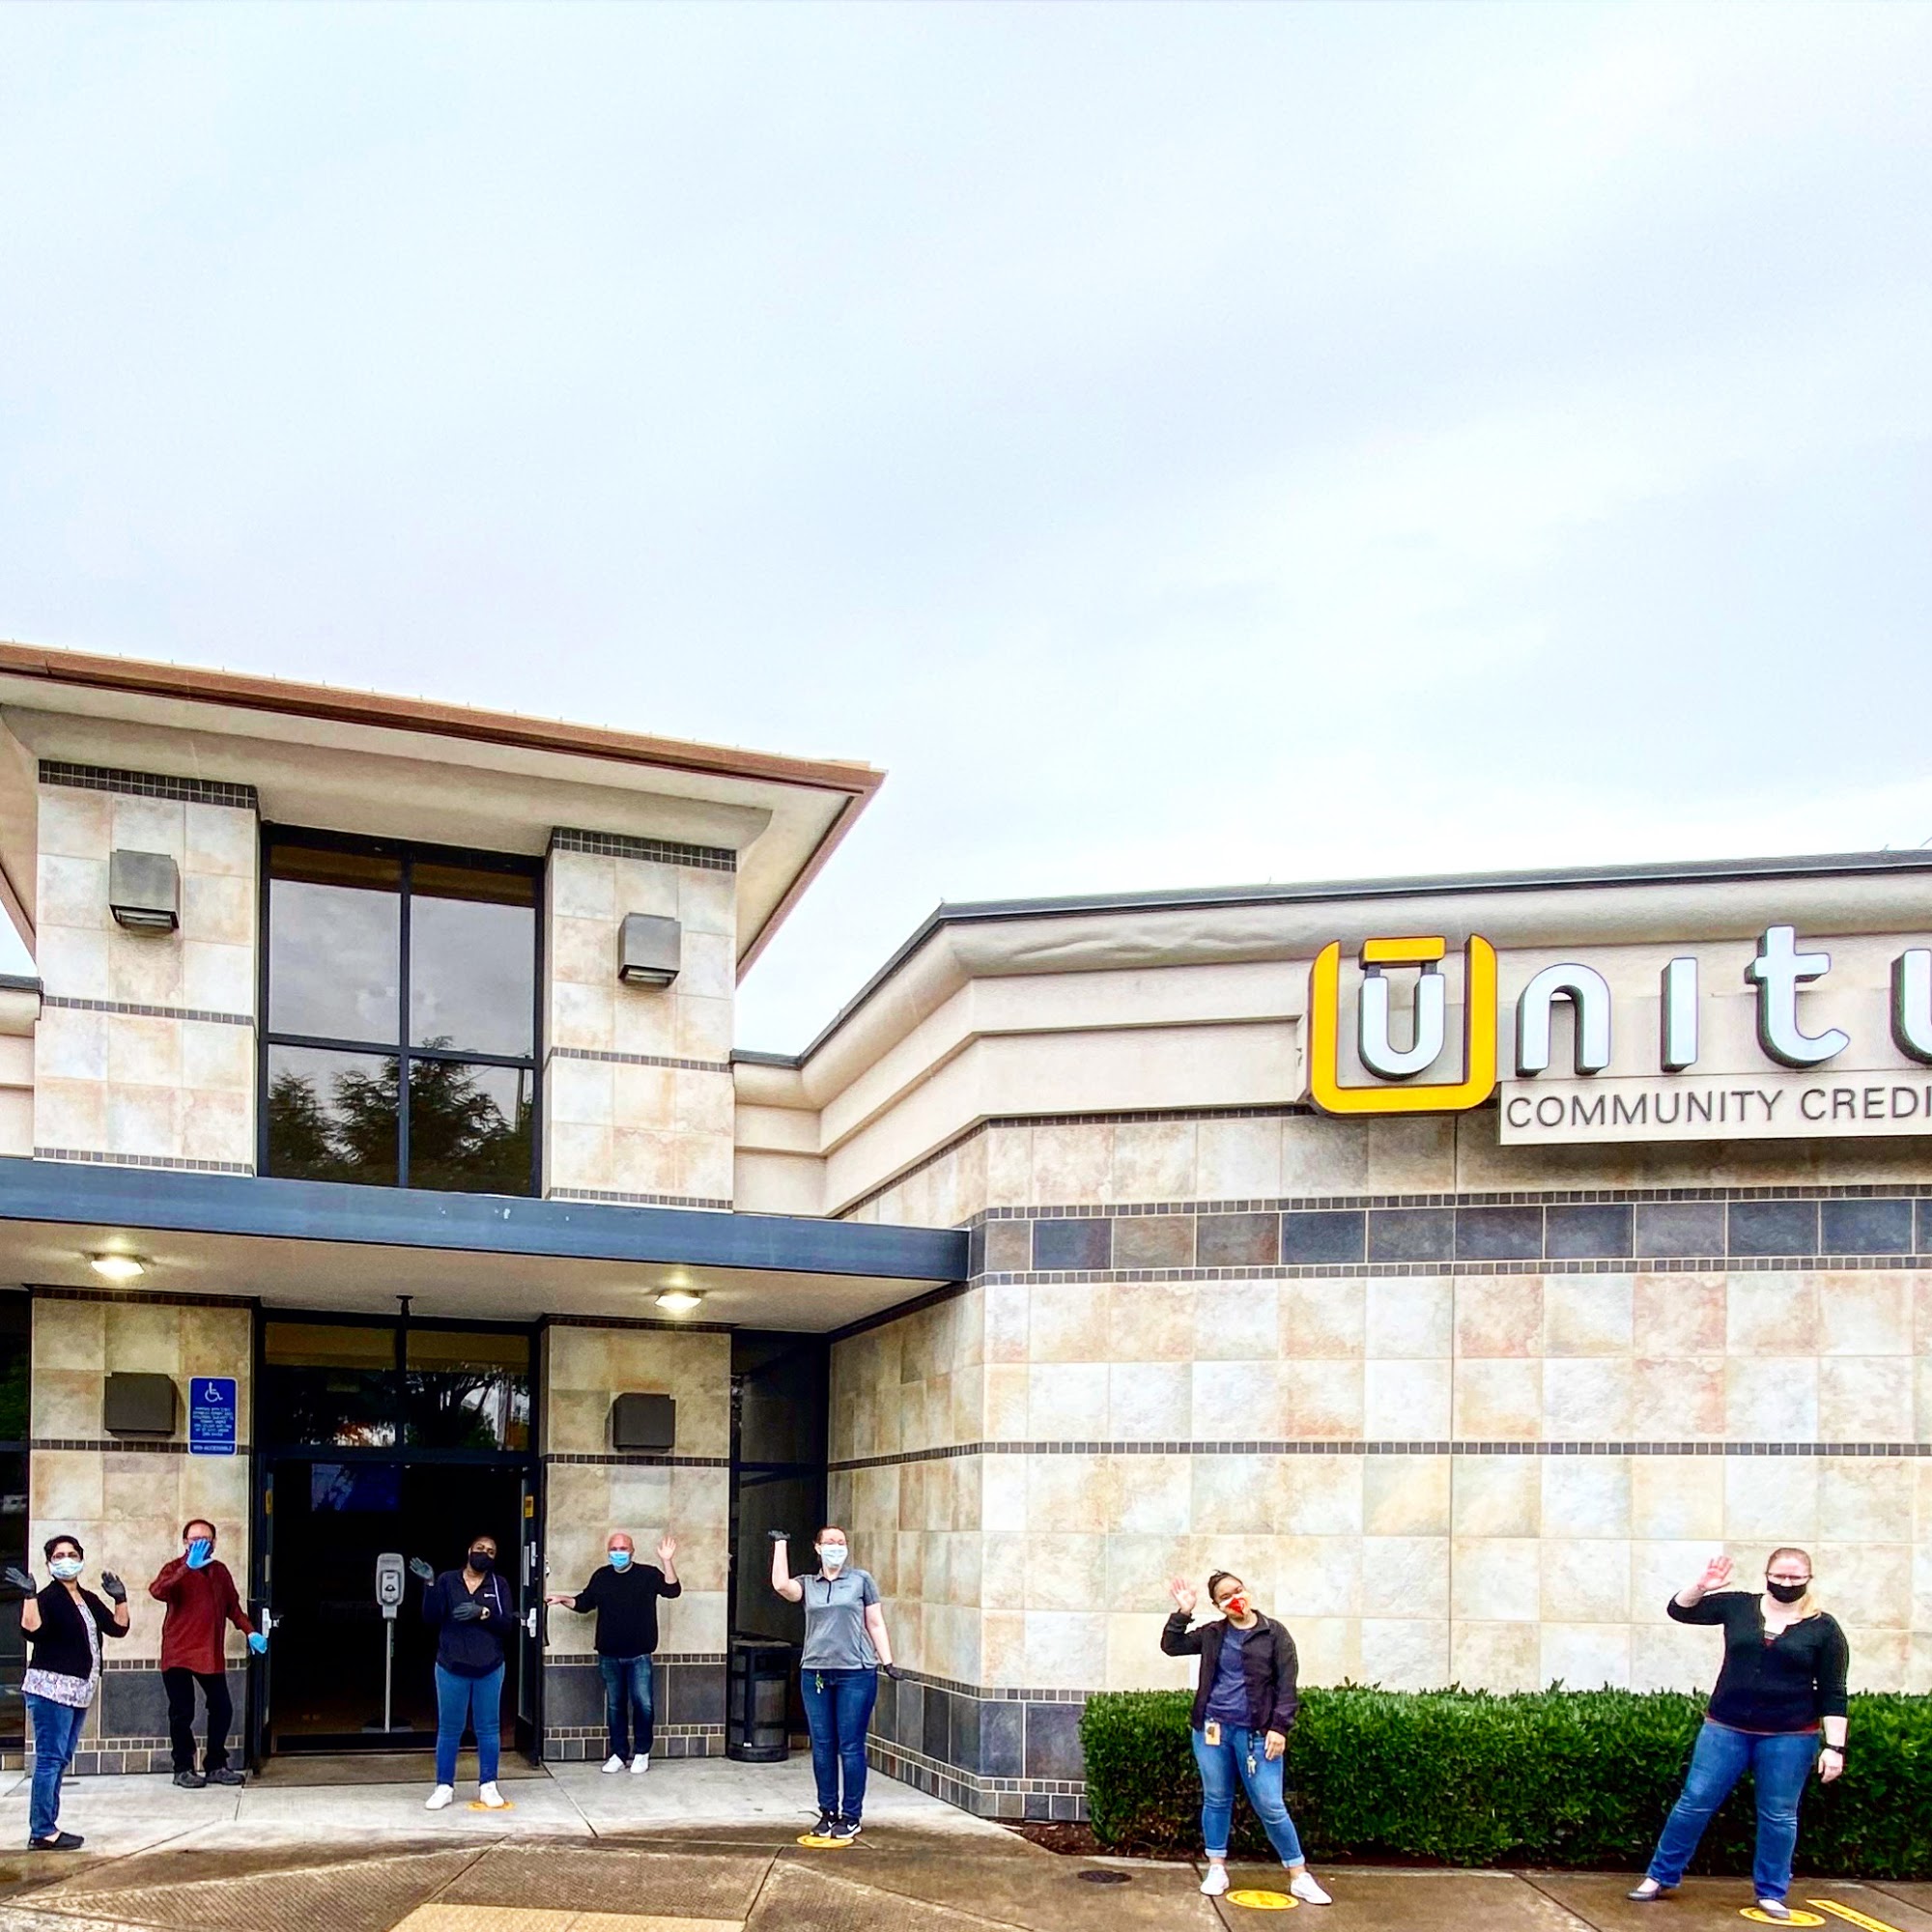 Unitus Community Credit Union